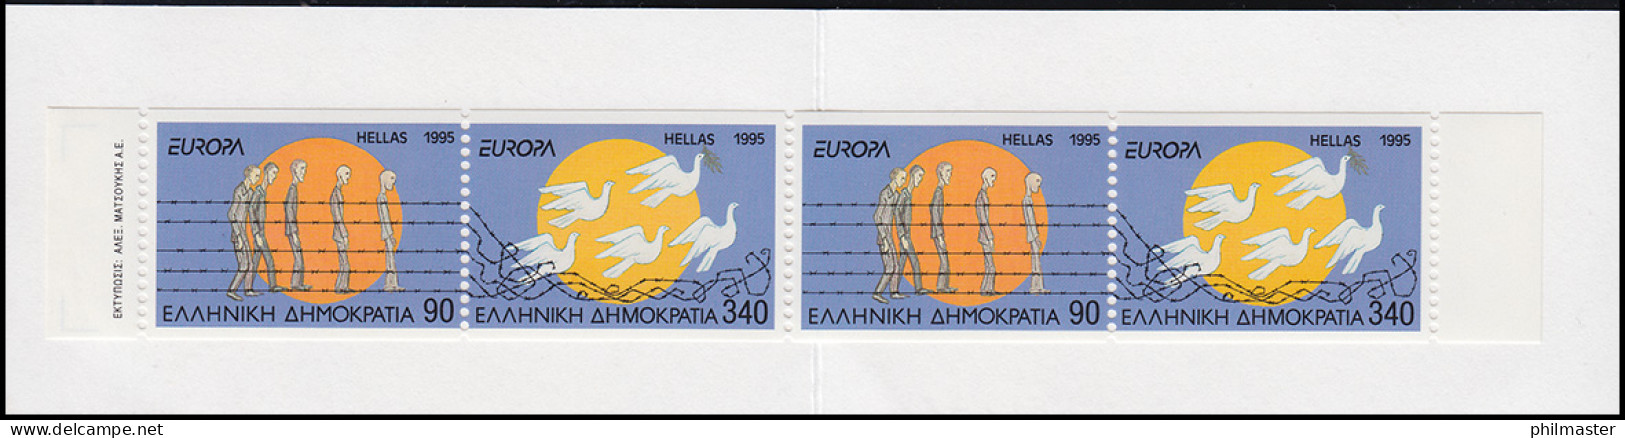 Griechenland Markenheftchen 18 Europa 1995, ** Postfrisch - Booklets